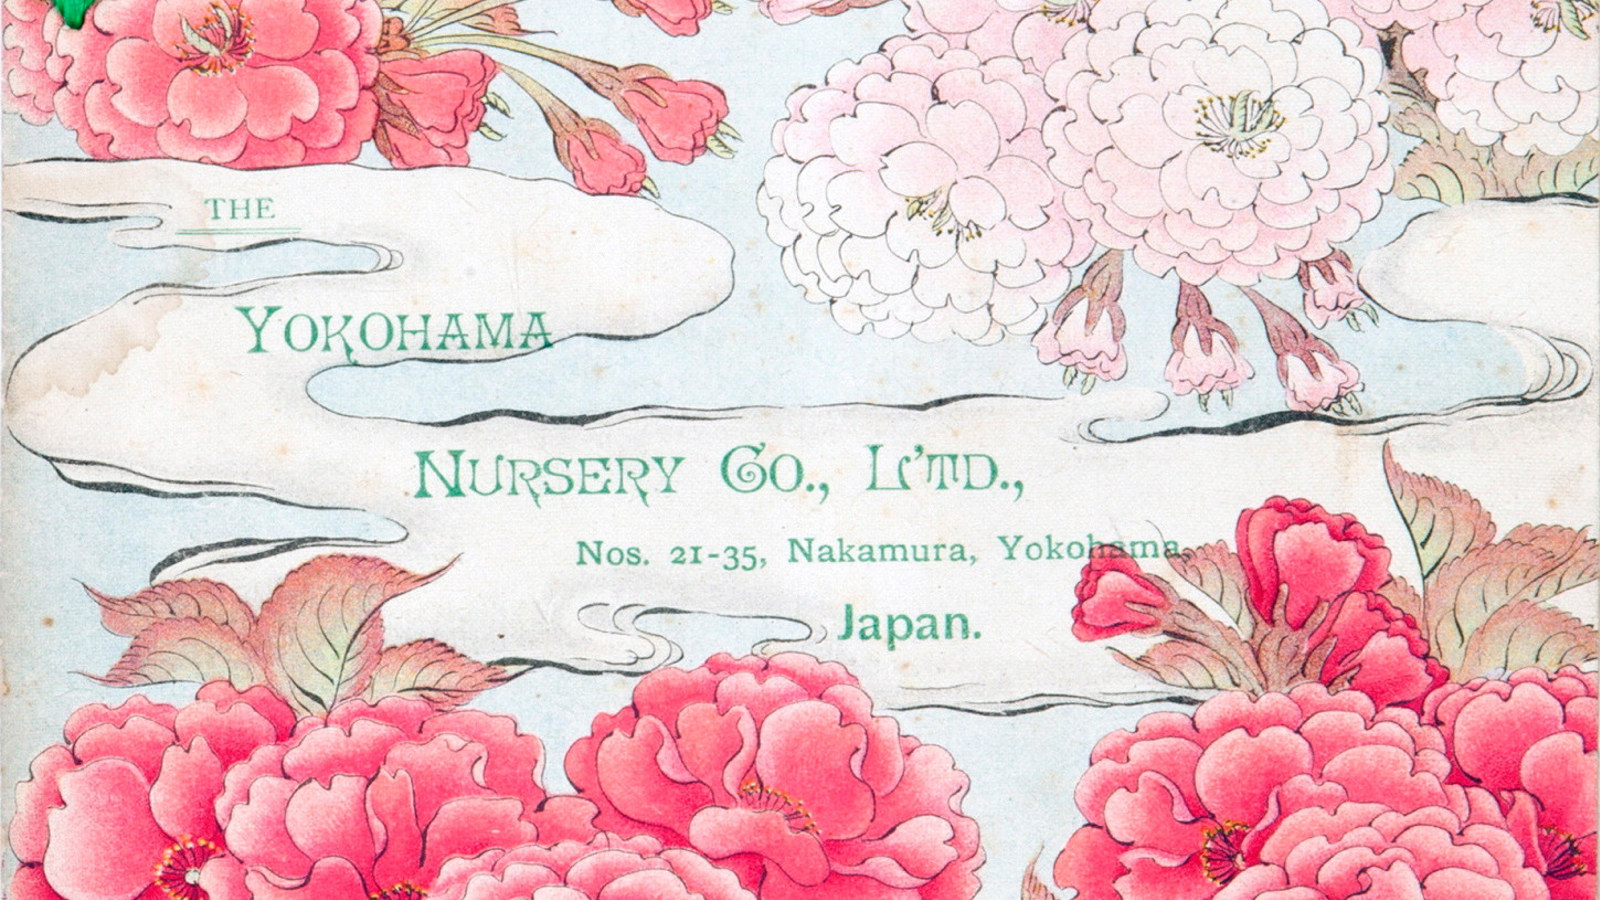 Picture from the Yokohama Nursery Company